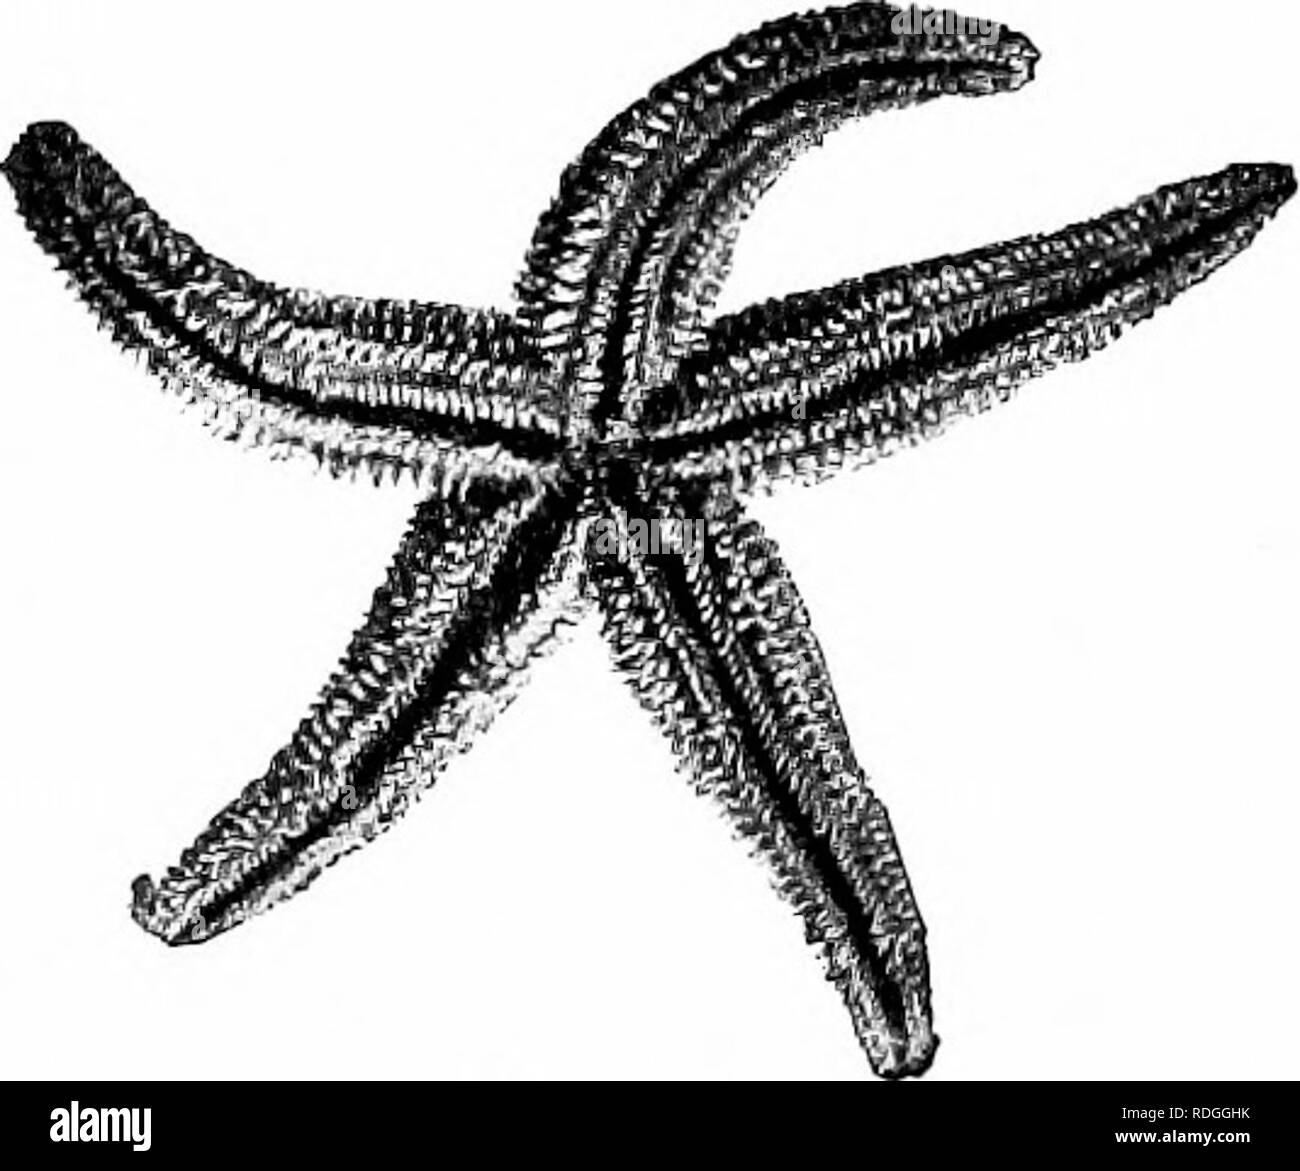 . Un manuel de zoologie générale. Zoologie. Étoile de X., les oursins, les ophiures Branch IX. - Echinodermes {echinos (colonne vertébrale), hedge hog- derma, peau) ; la plupart des membres de cette branche ont la surface du corps assailli d'épines ; d'où le nom, Echinoder- mata, qui signifie tortue à peaux. Dans tous les échinodermes les parties du corps sont disposés de manière radiale. Dans presque tous les il y a un exosquelette constitué de plaques calcaires. Sans exception, ils sont trouvés dans la mer. Un exemple de la Direction générale - l'Étoile de la forme et de la symétrie radiale de l'étoile. -L'étoile de mer commune a une étoile-sh Banque D'Images